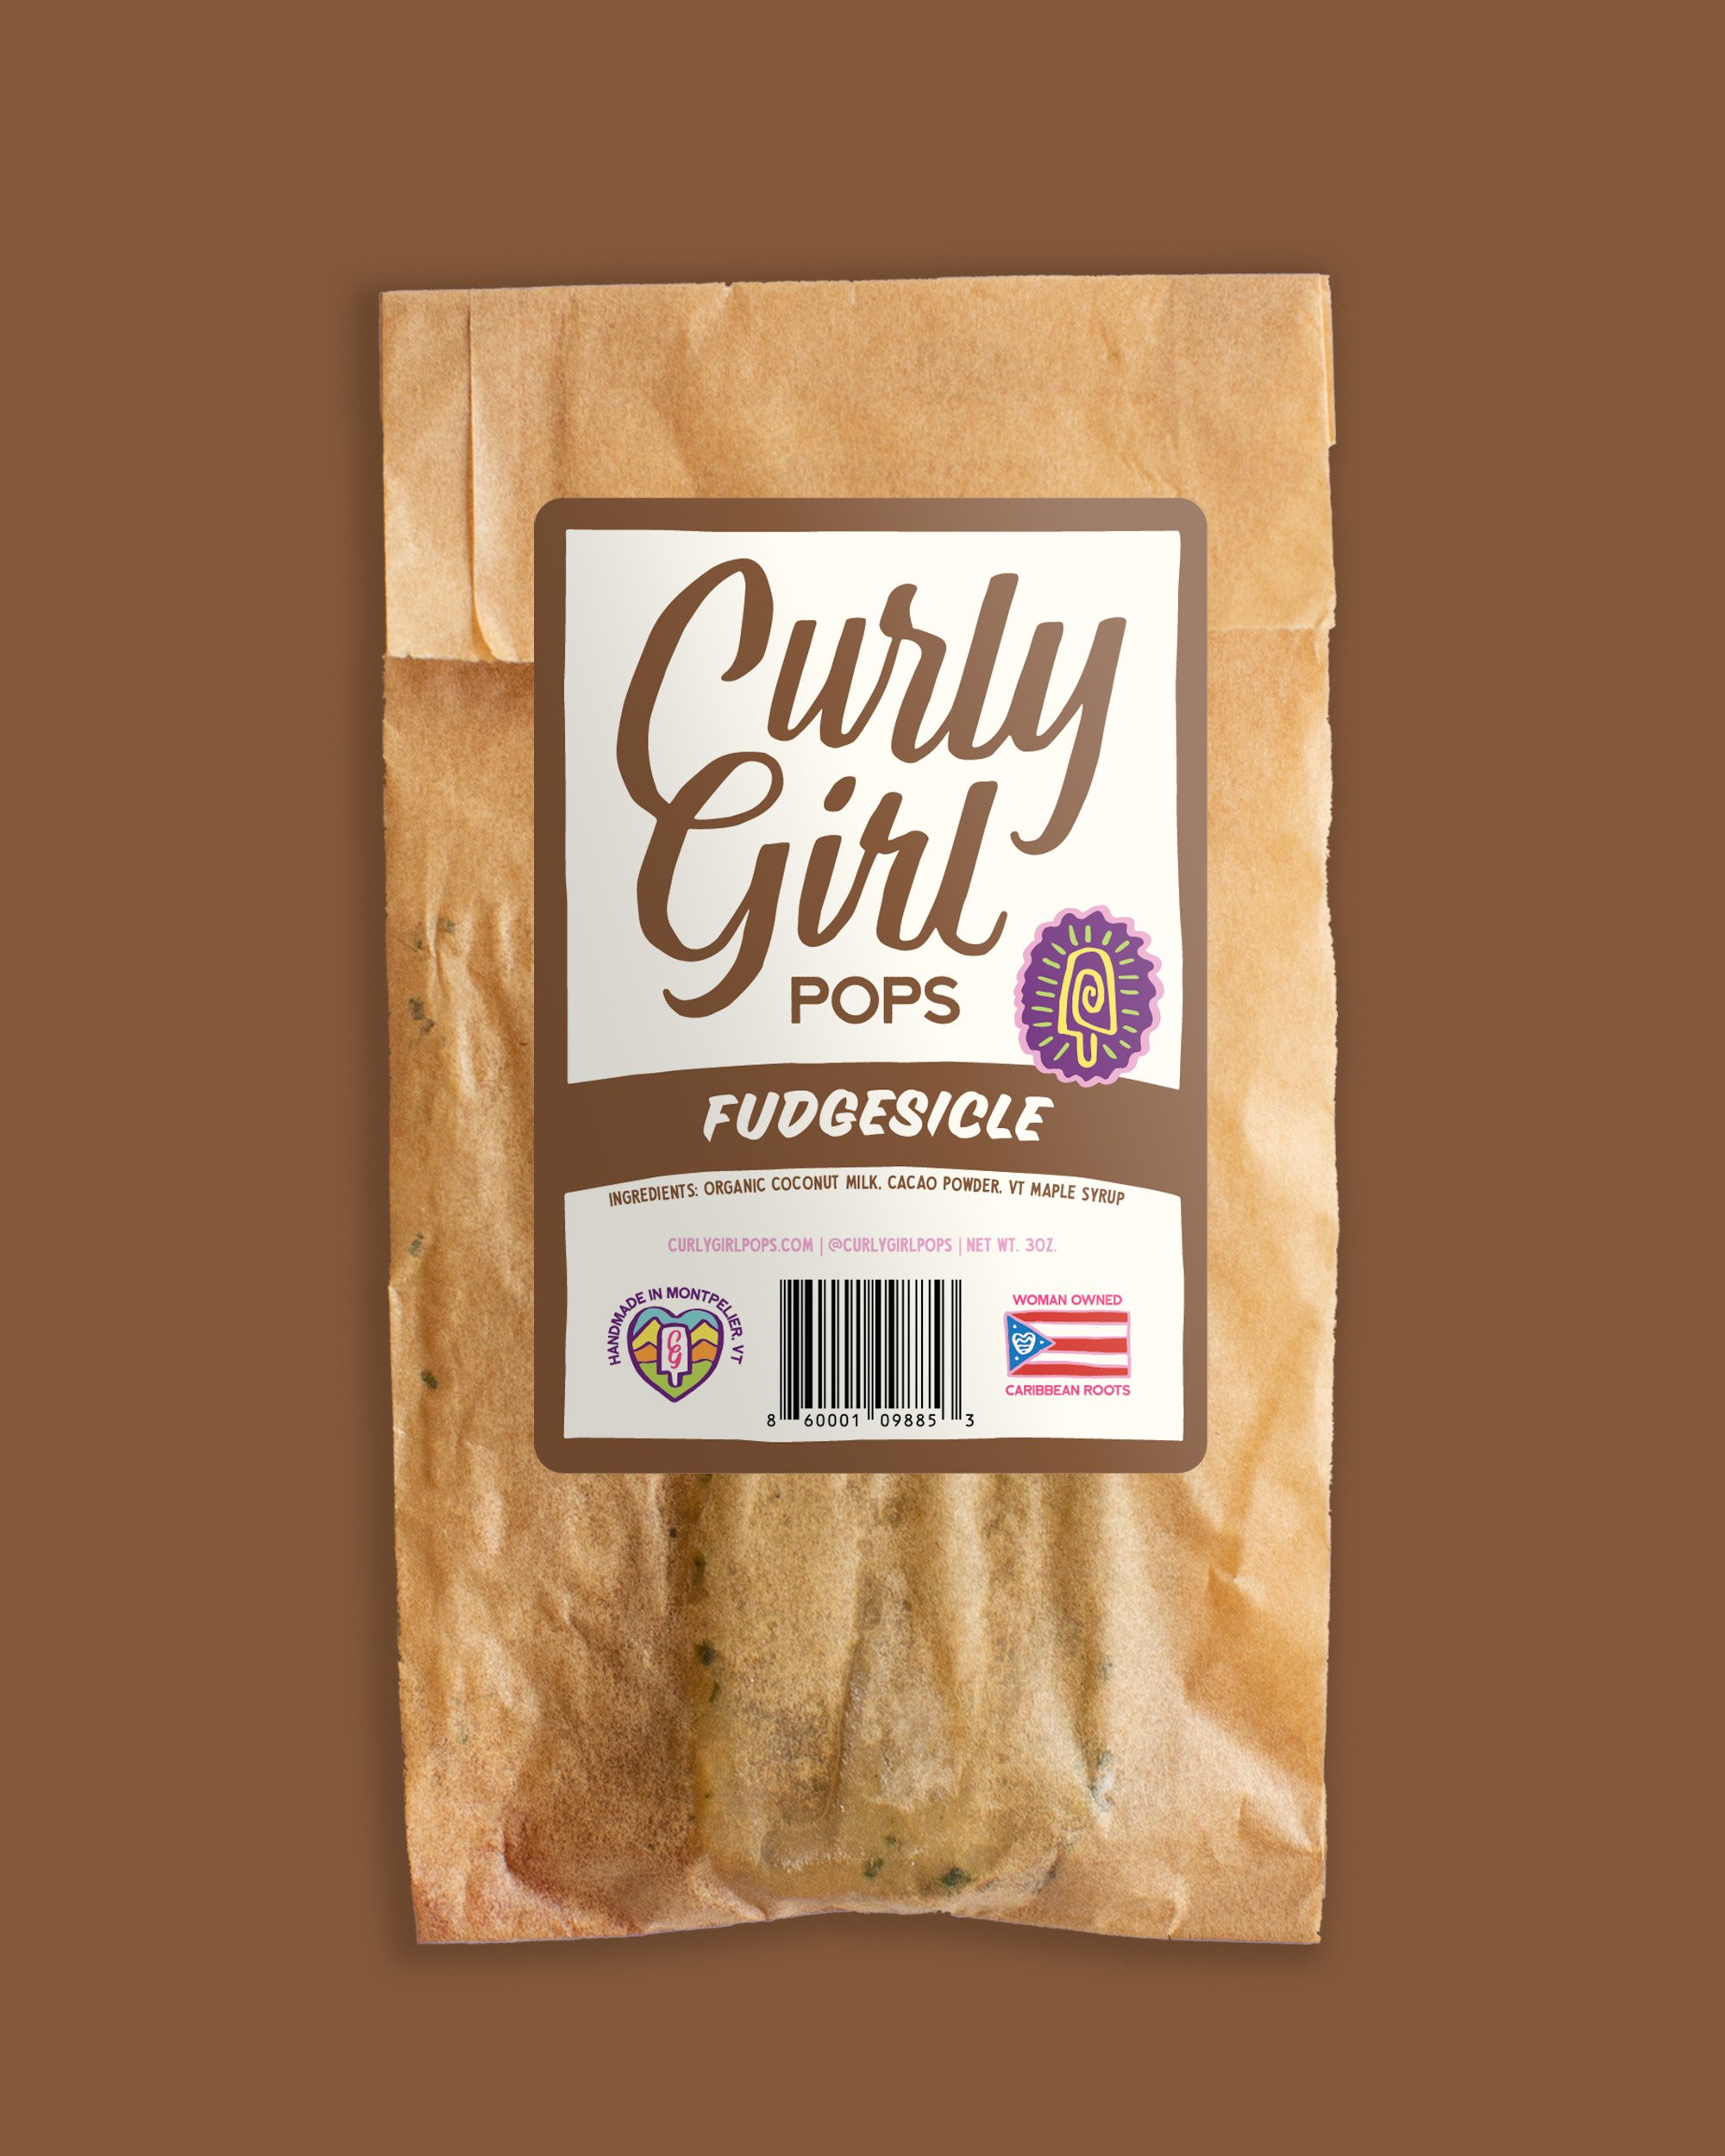 CurlyGirl-Packaging-Mockups-Fudgesicle.jpg